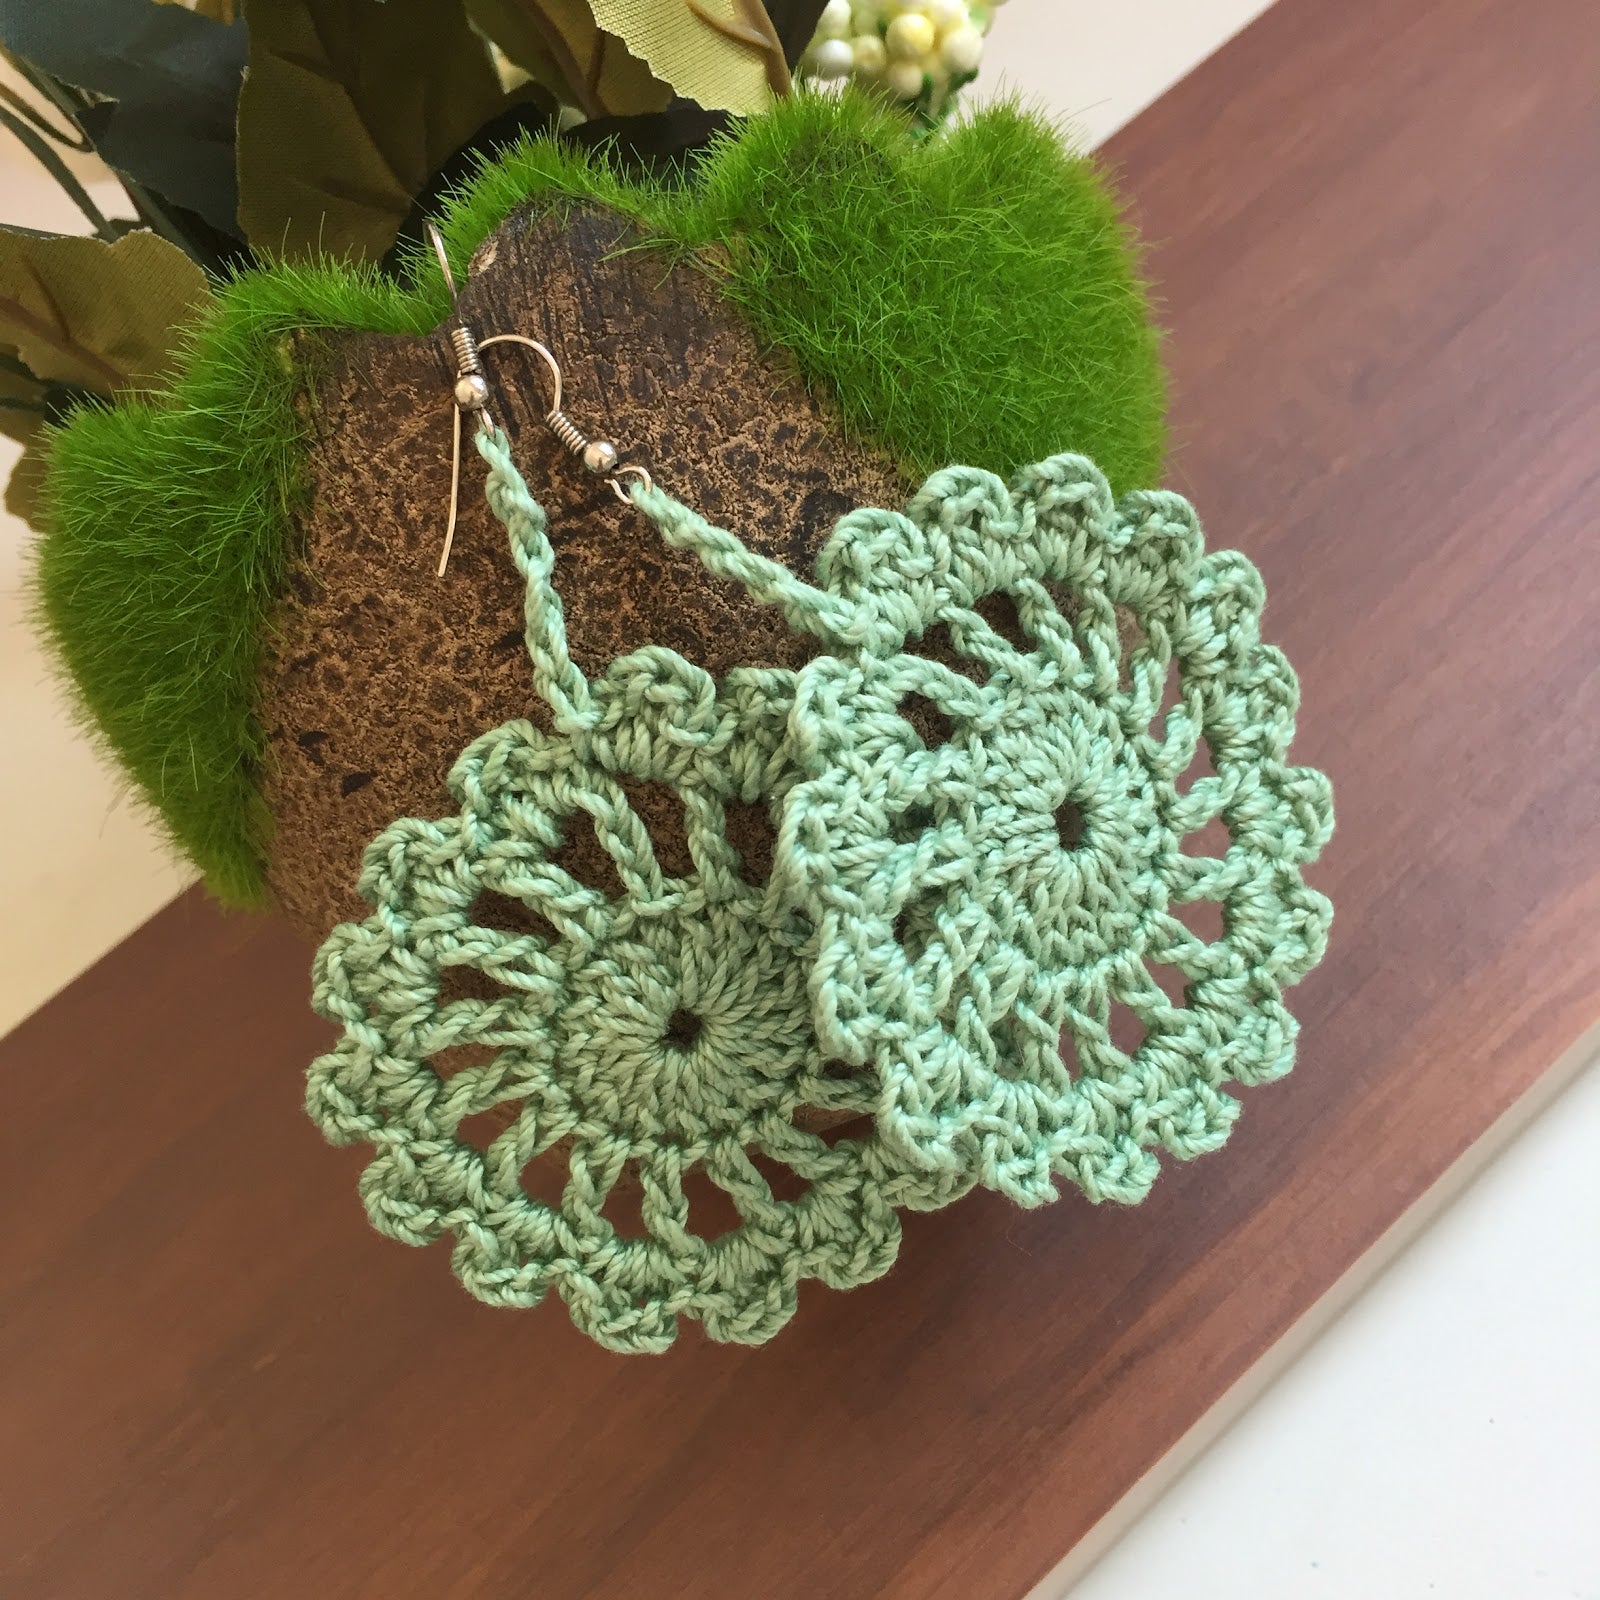 Looluu Earrings | My beloved crochet earrings in tan silk ya… | Flickr